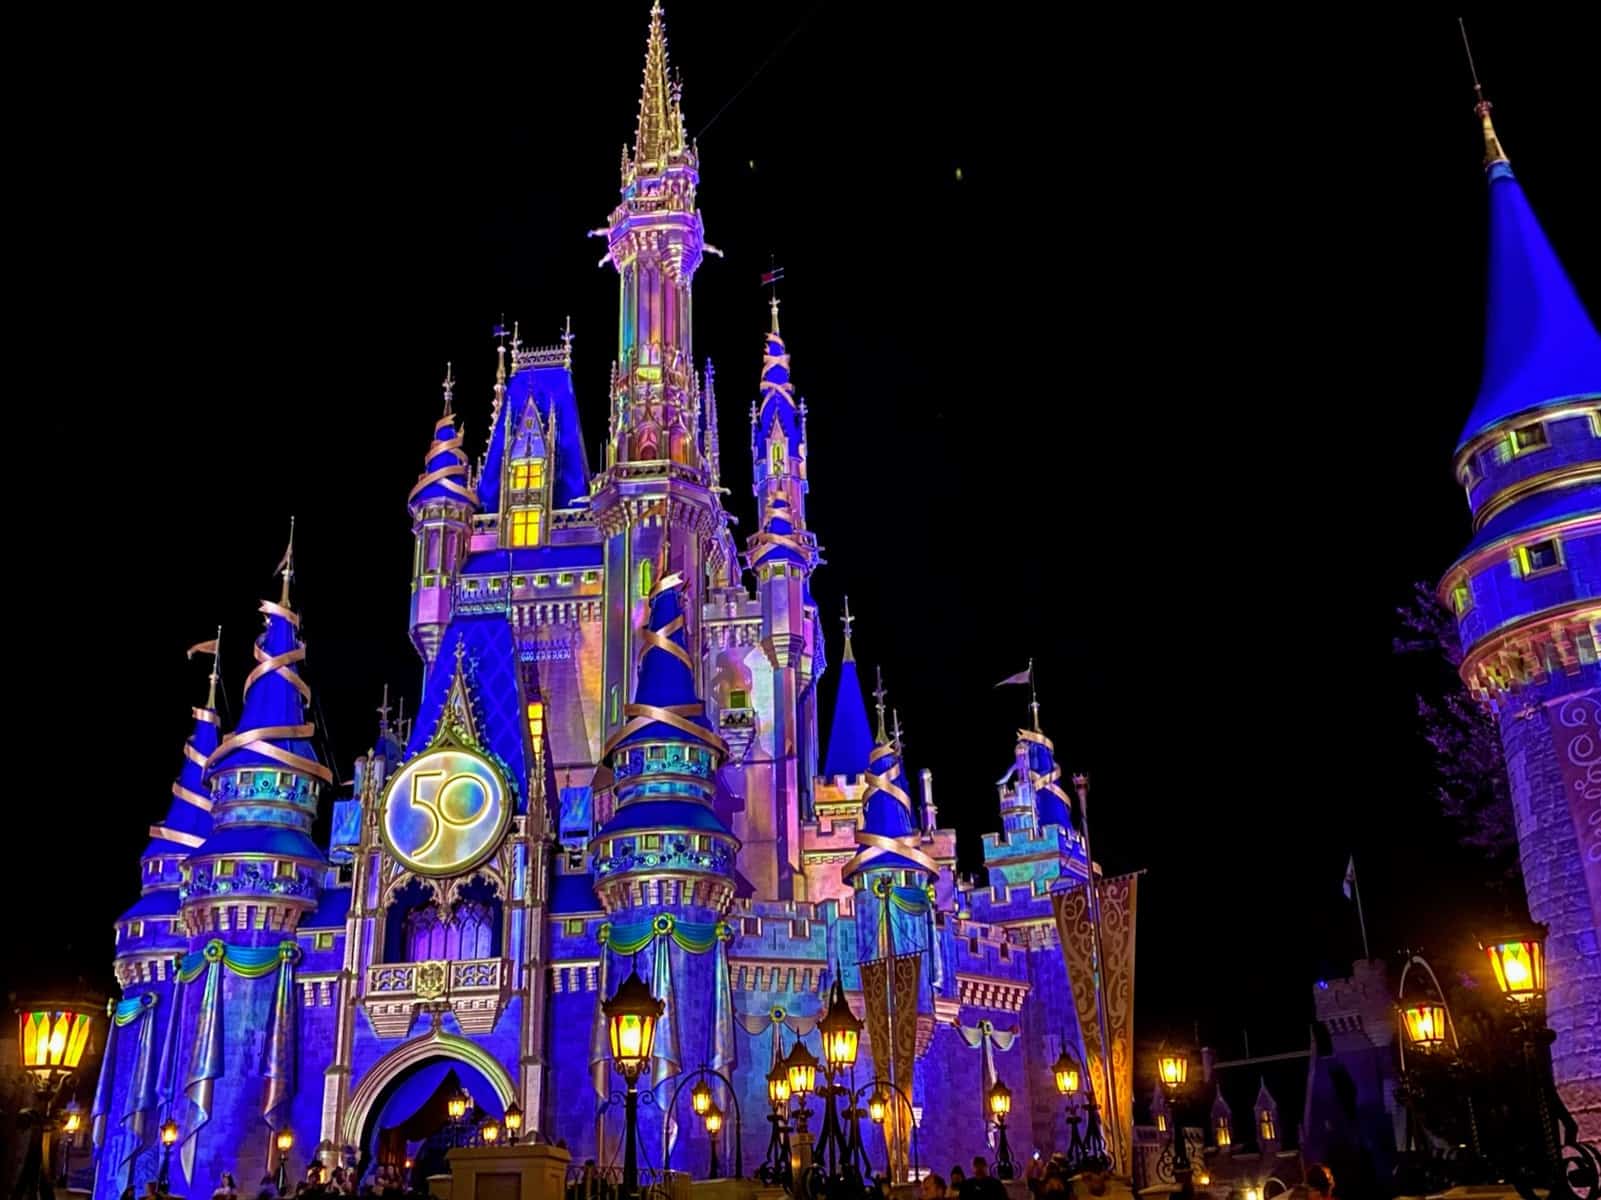 Cinderella castle at night